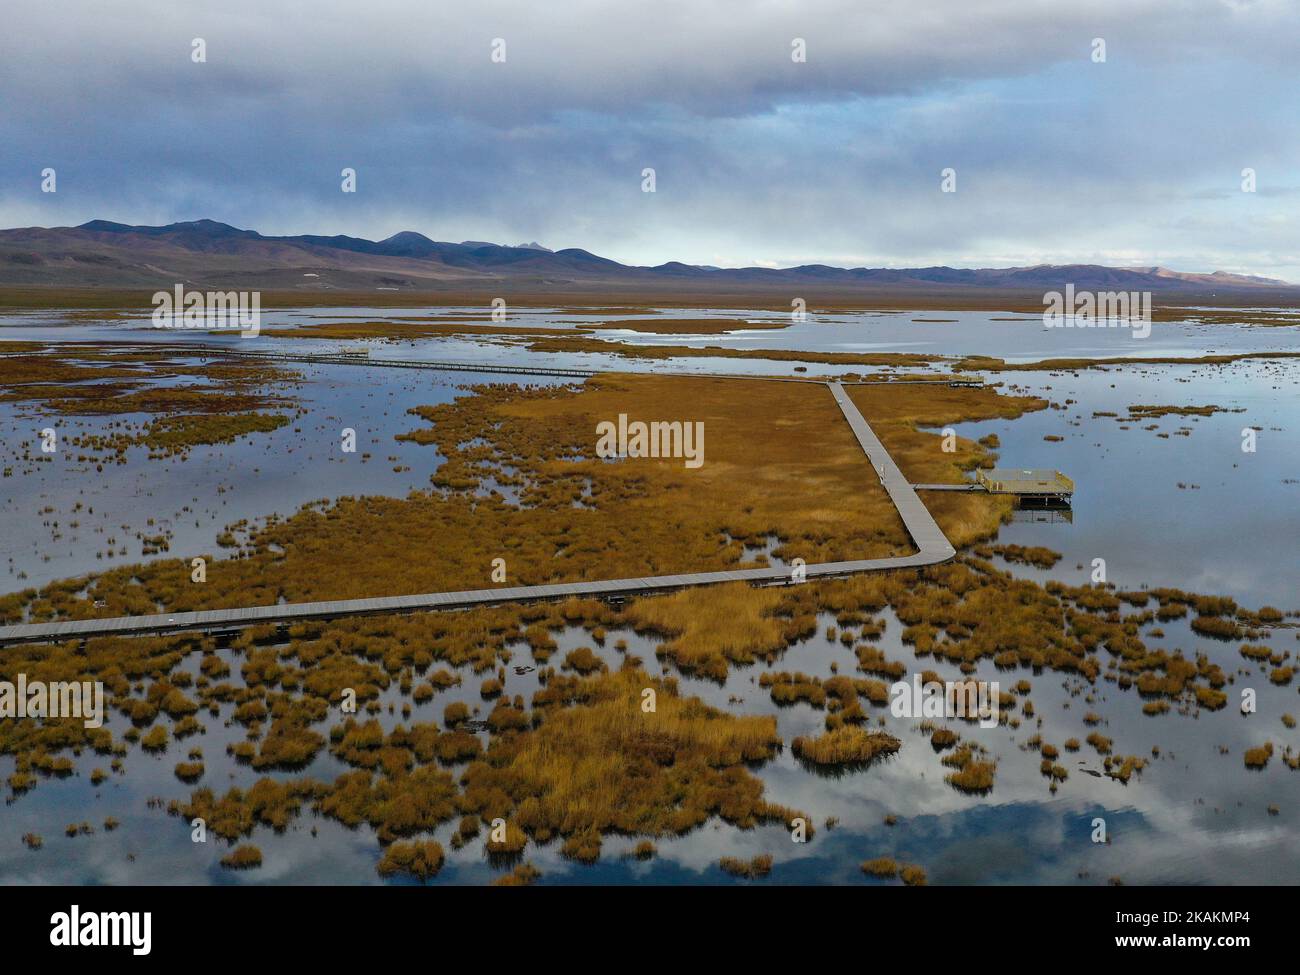 (221103) -- ABA, 3 novembre 2022 (Xinhua) -- questa foto aerea scattata il 18 ottobre 2022 mostra una vista della zona umida del lago Huahu nella contea di Ruoergai della prefettura autonoma tibetana-Qiang di Aba, provincia sudovest del Sichuan. La Riserva Naturale Nazionale delle paludi di Ruoergai è stata istituita per proteggere l'ecosistema locale delle paludi di torba e le specie rare come la gru a collo nero. Nota per le vaste praterie disseminate di fiumi, laghi e paludi tortuosi, questa riserva naturale divenne una riserva a livello nazionale nel 1998, ed è stata designata come zona umida di importanza internazionale nel 2008. L'ambiente ecologico o Foto Stock